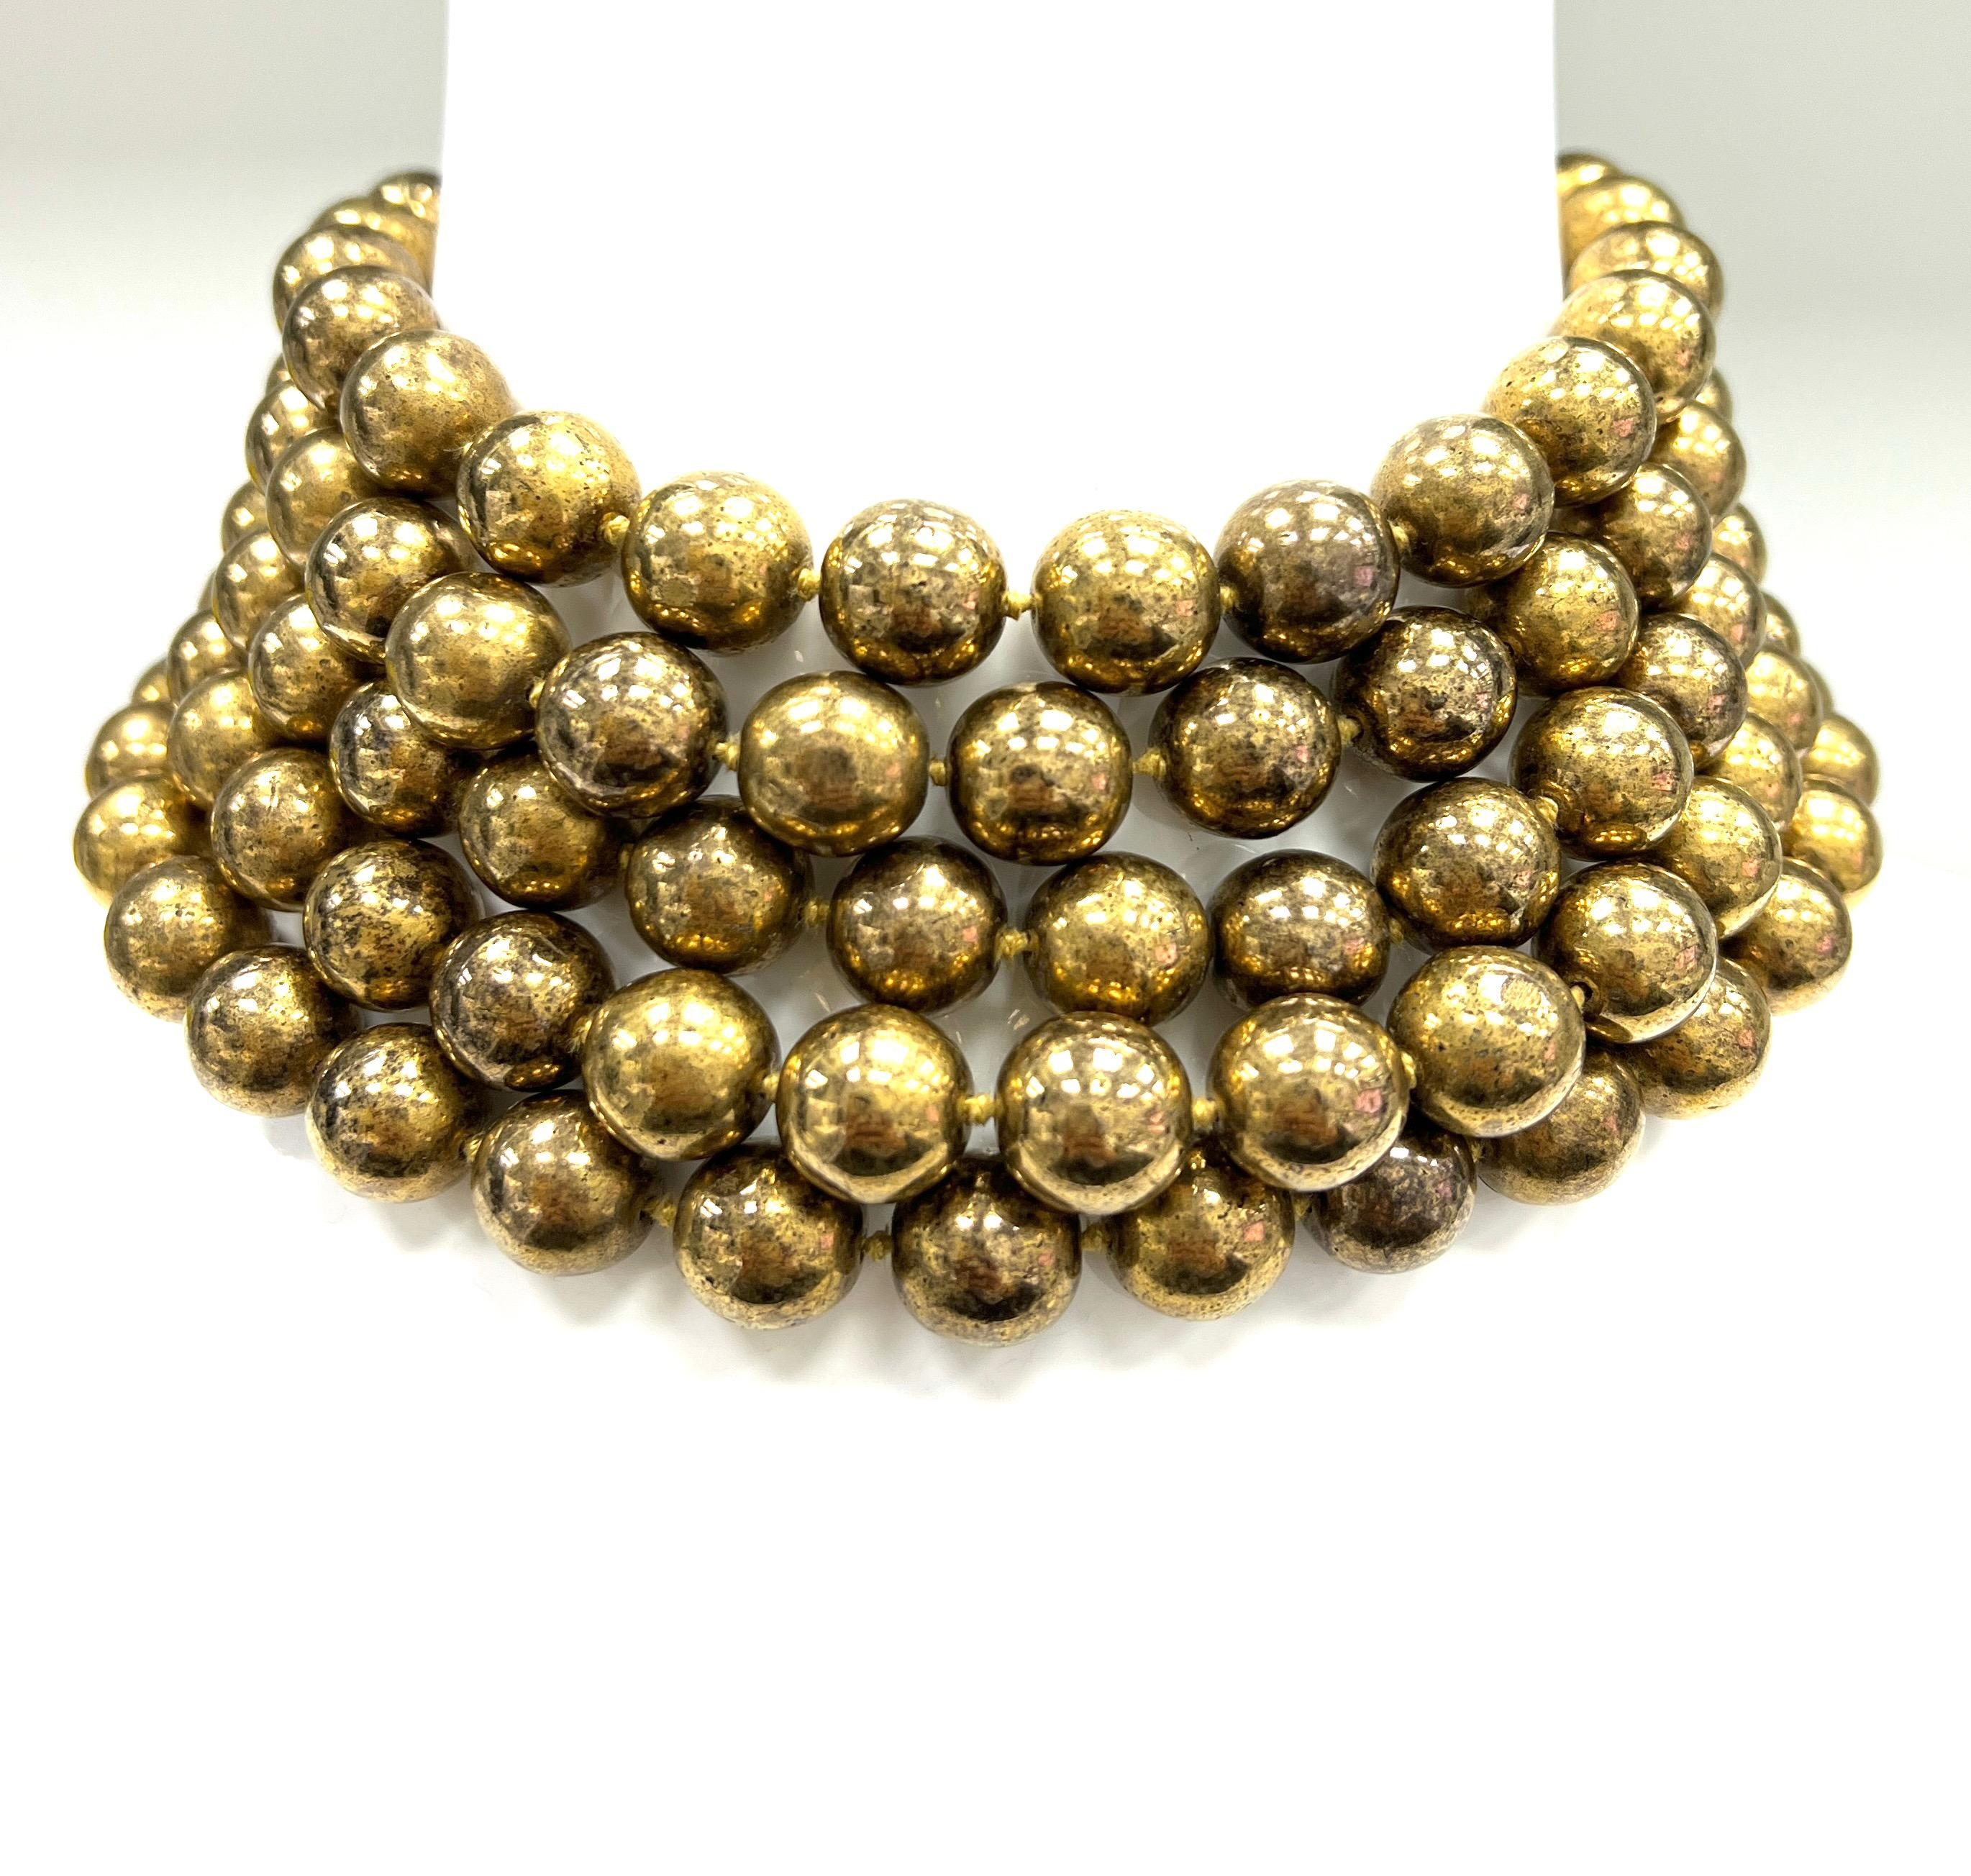 Chanel Vintage-Halskette mit vergoldeten Metallperlen, hergestellt in Frankreich

Fünfstrangige vergoldete Metallperlen (13 mm), die eine breite Halskette bilden; bezeichnet Chanel, 23, hergestellt in Frankreich

Größe: Breite 2,5 Zoll, Länge 14